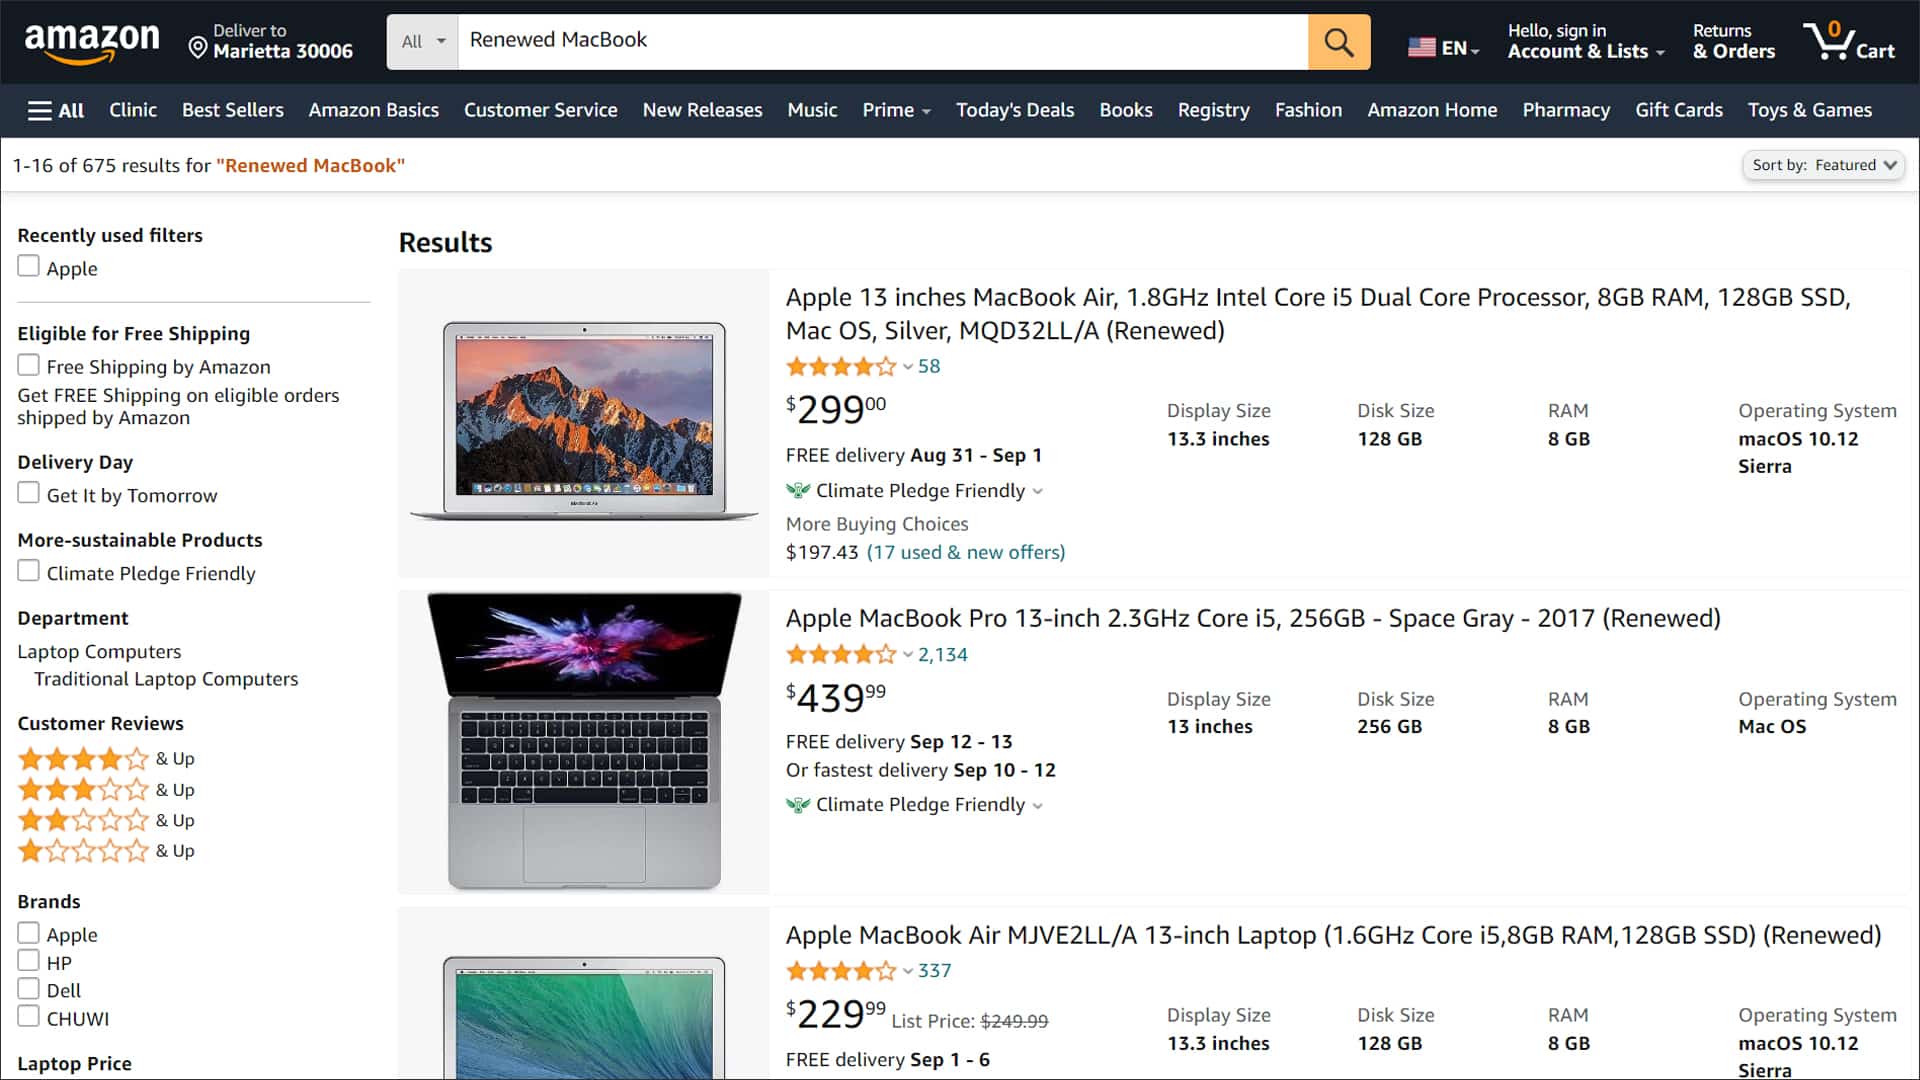 Amazon Renewed MacBook